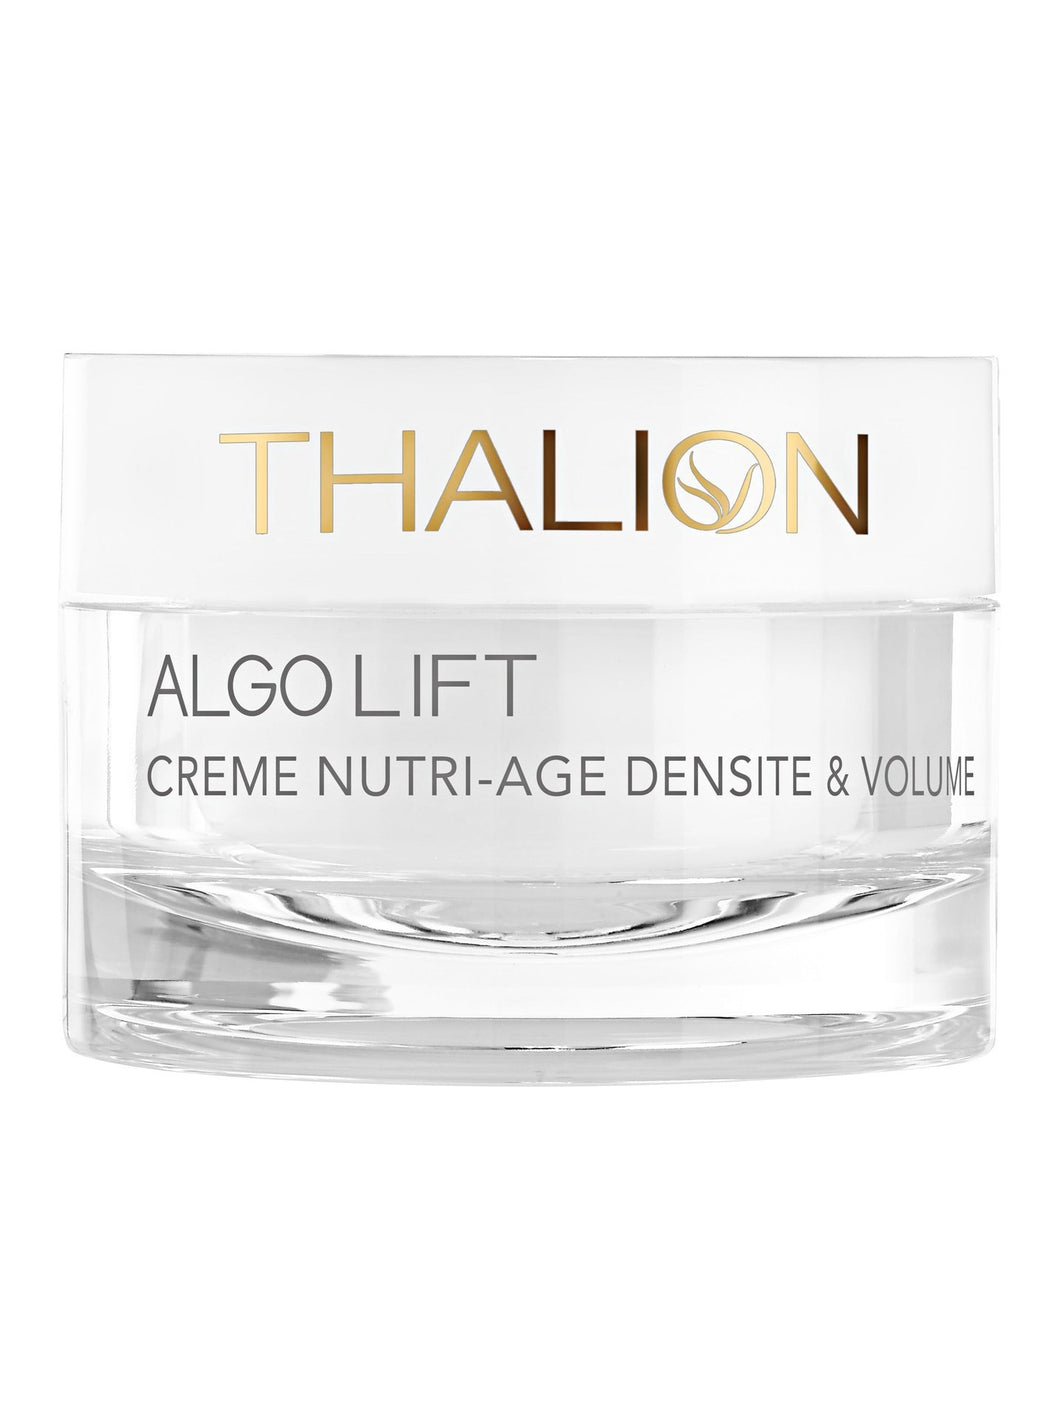 Algolift Crème Nutri-Âge - Densité & Volume - Thalion